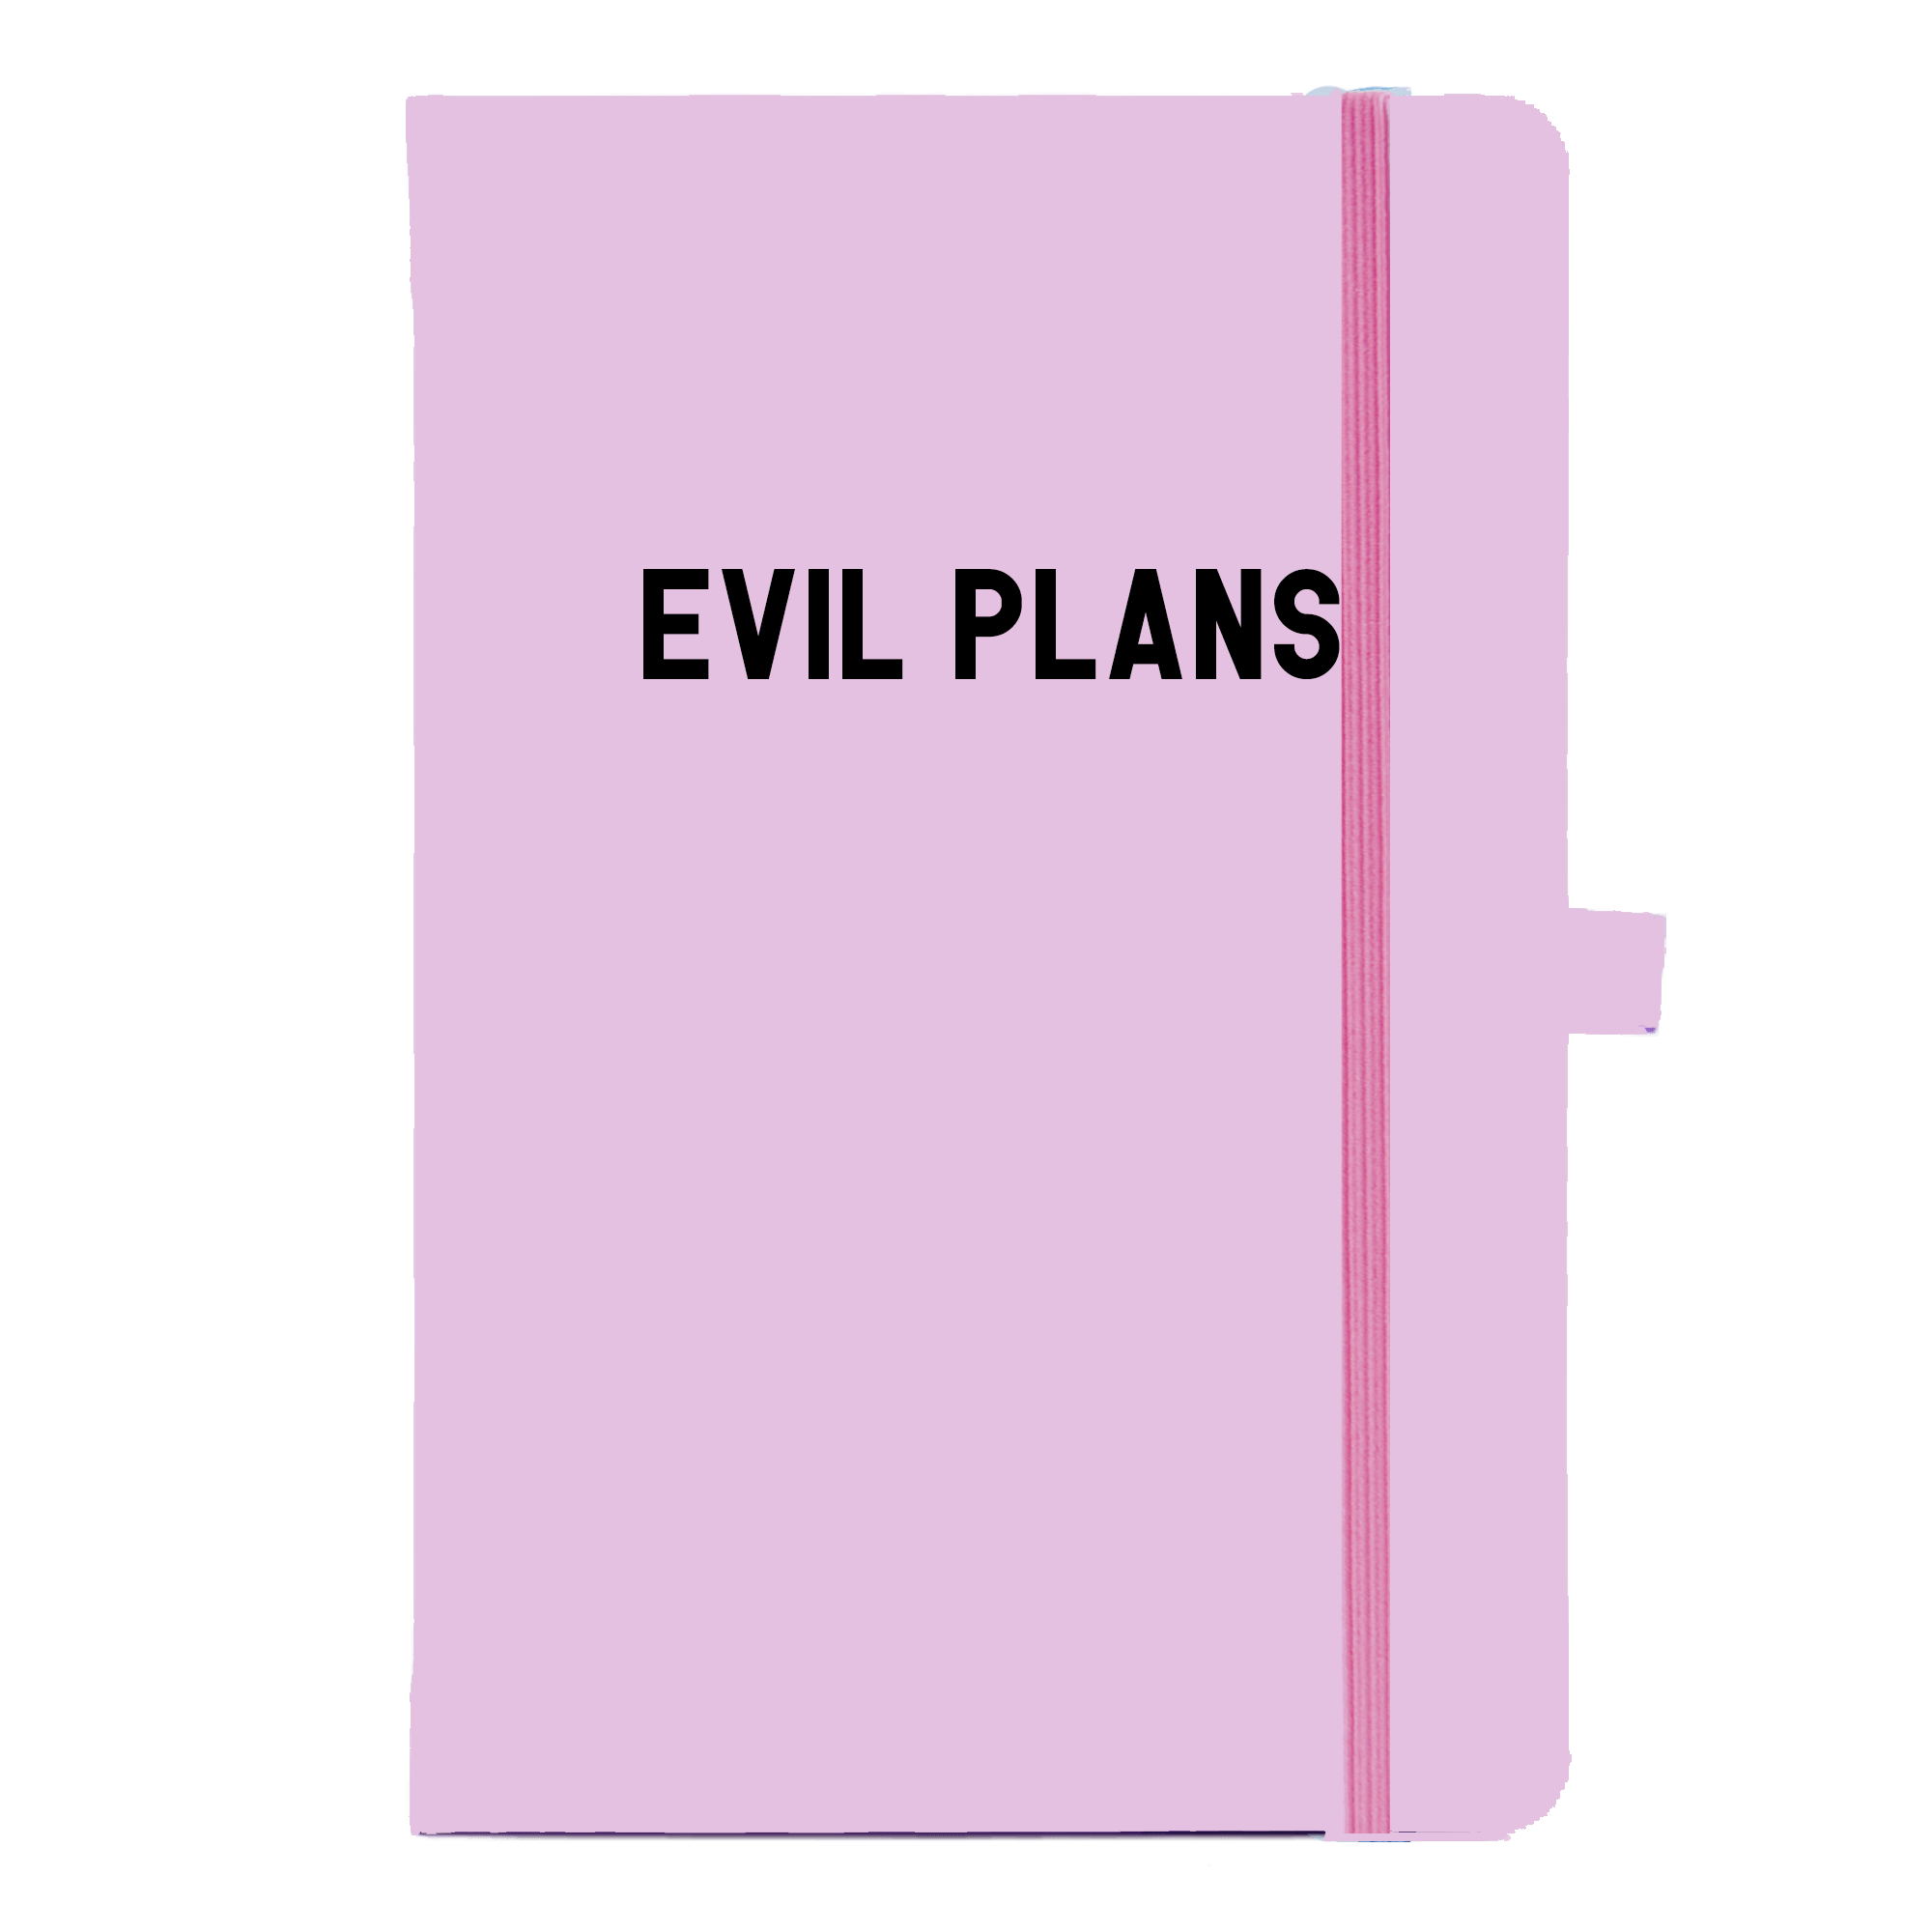 Evil plans